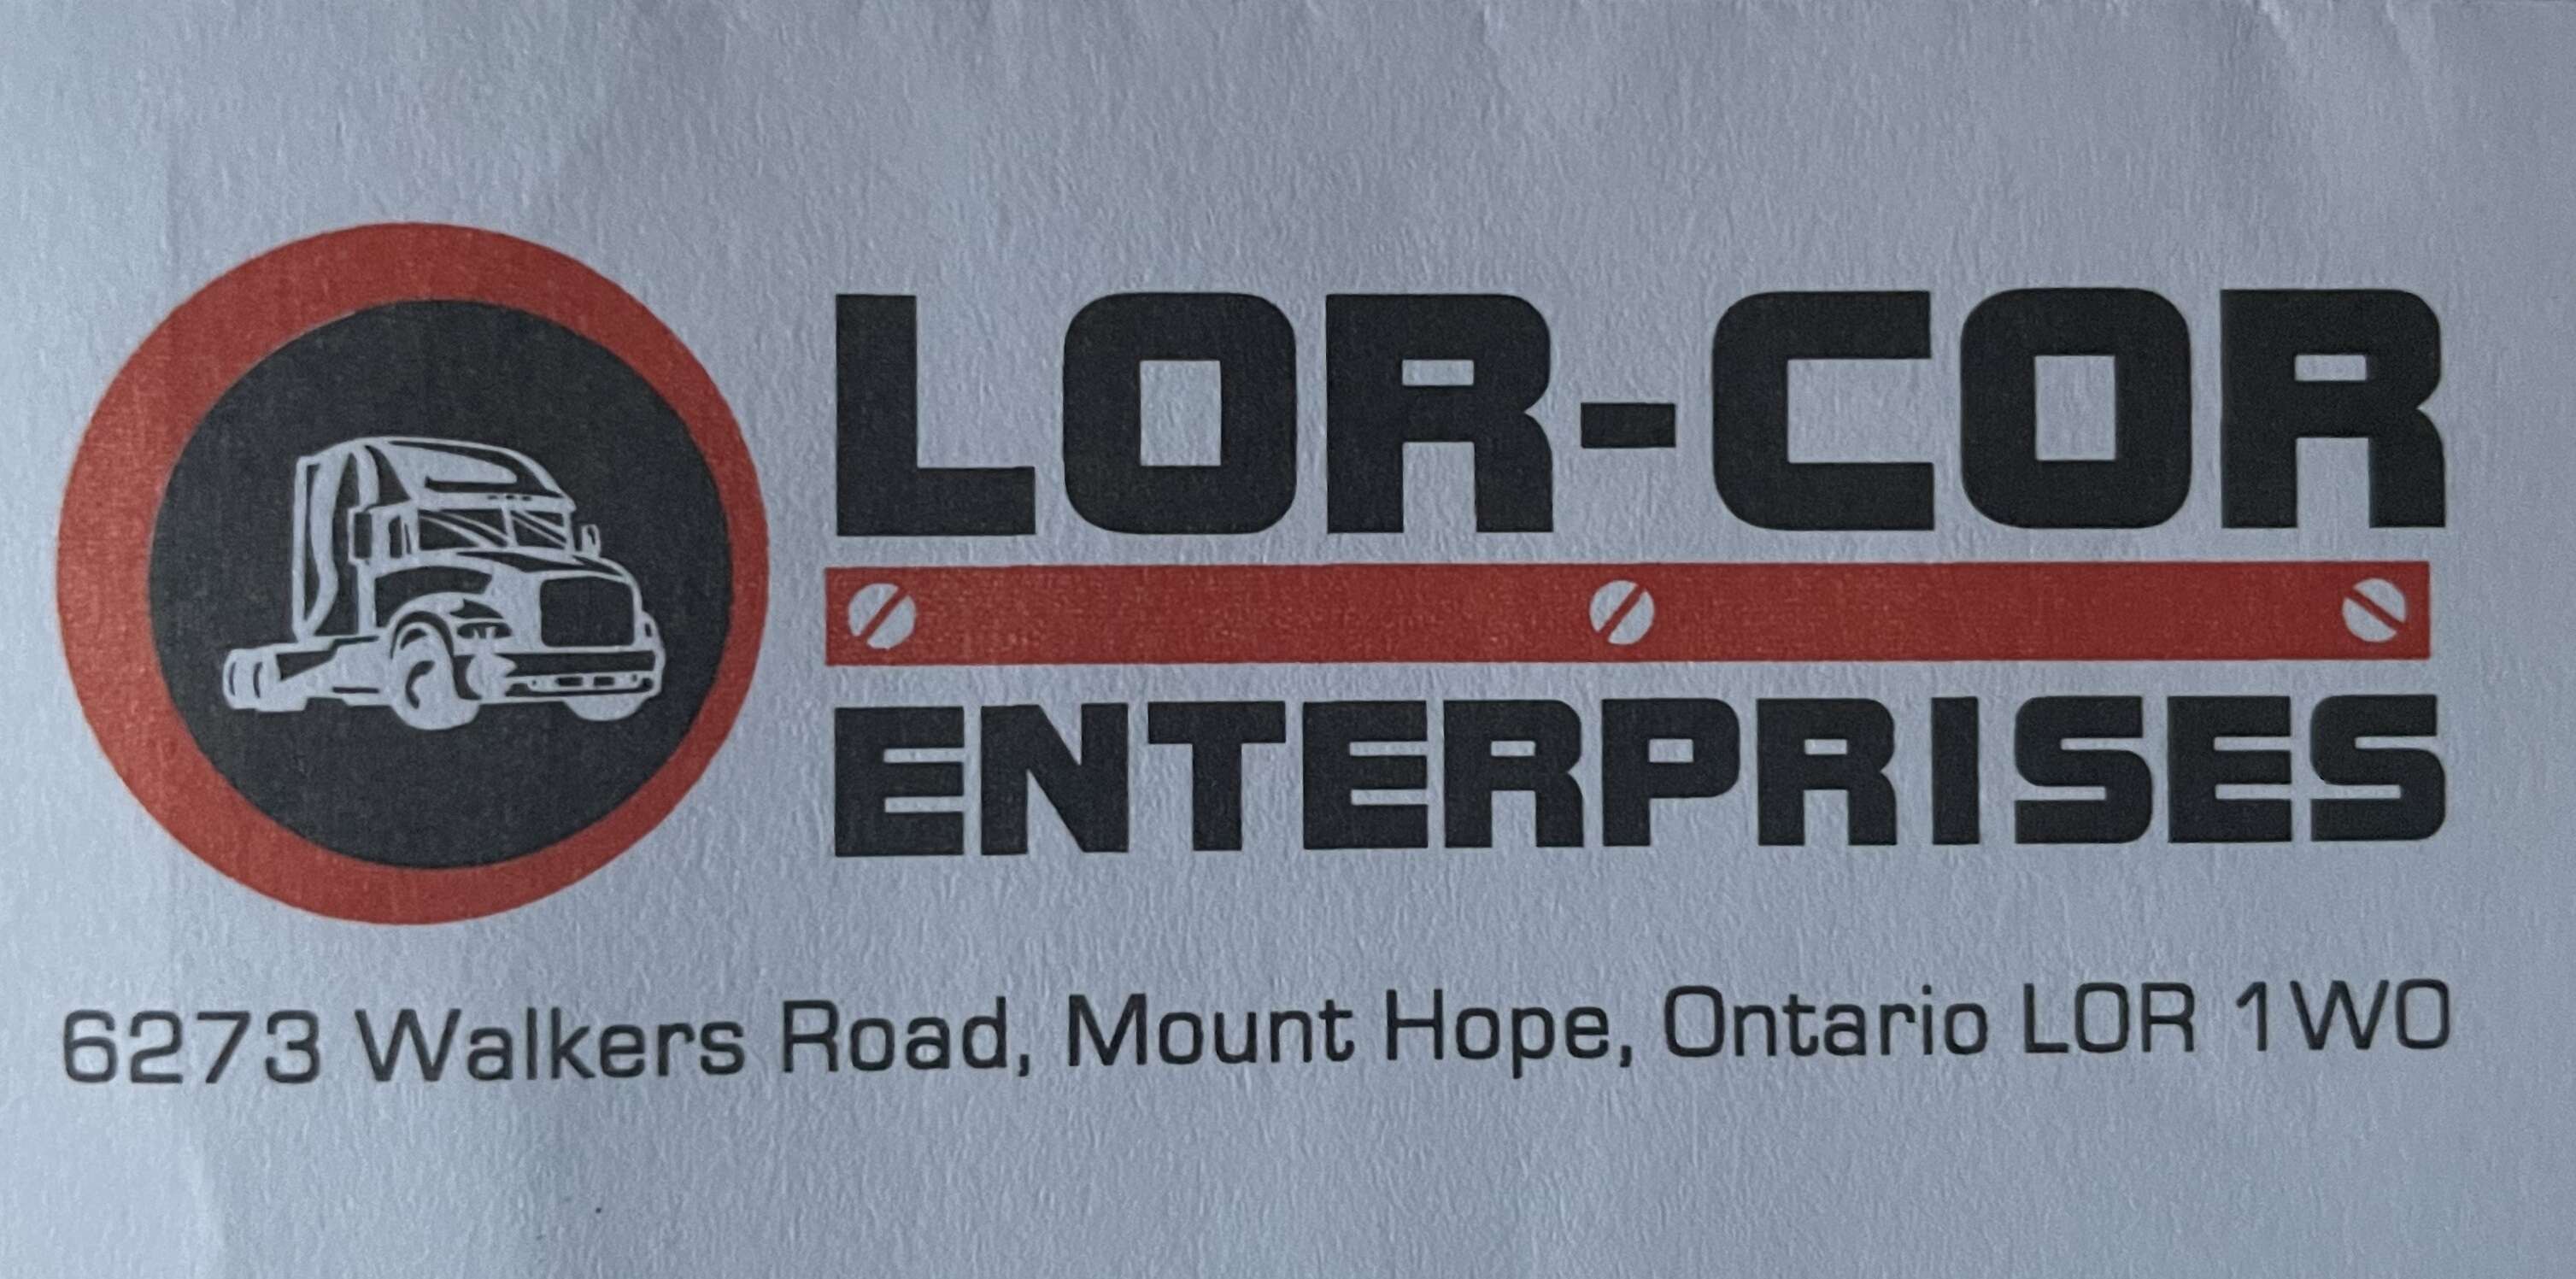 Lor-Cor Enterprises